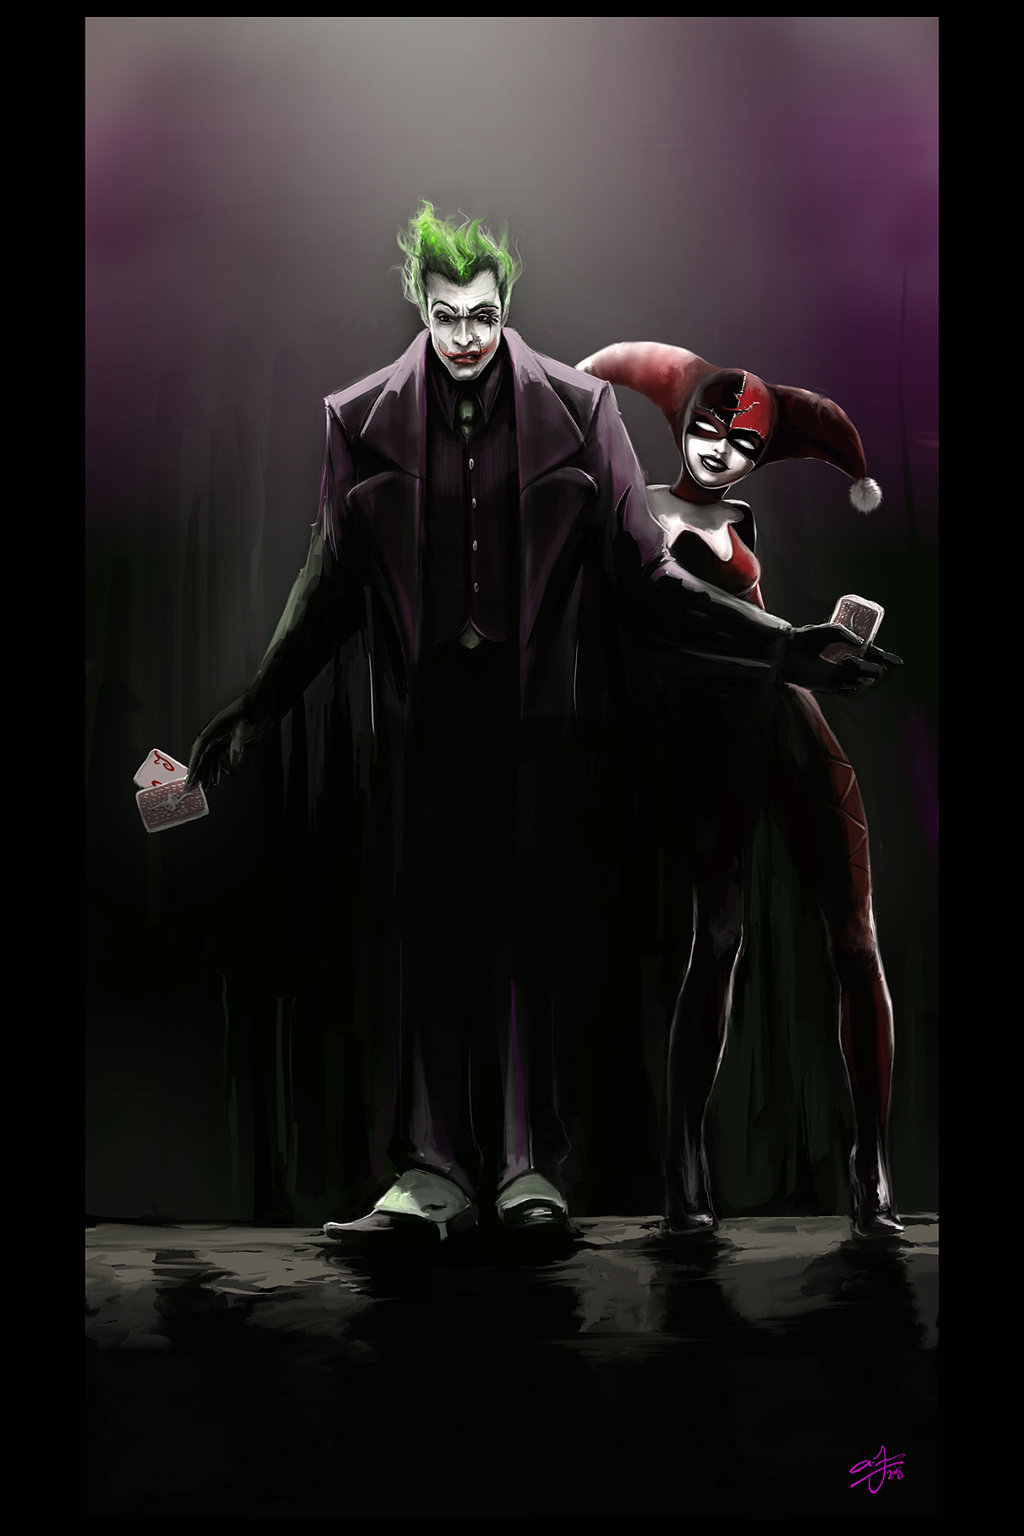 The Joker Wallpaper And Harley Quinn